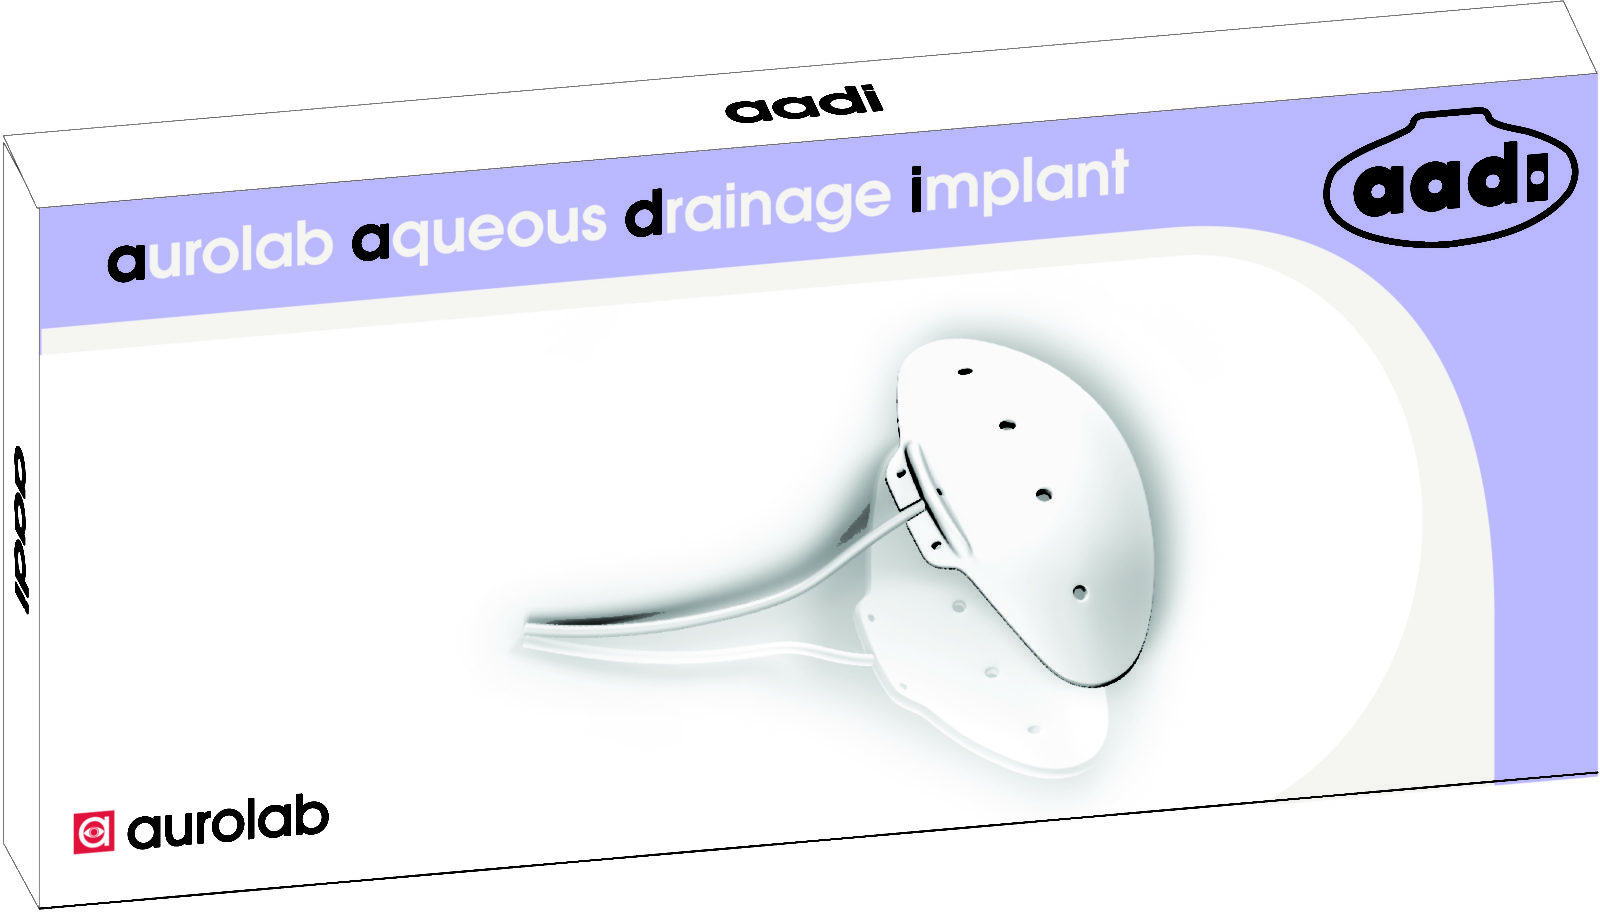 AADI ( Aurolab Aqueous drainage implant)